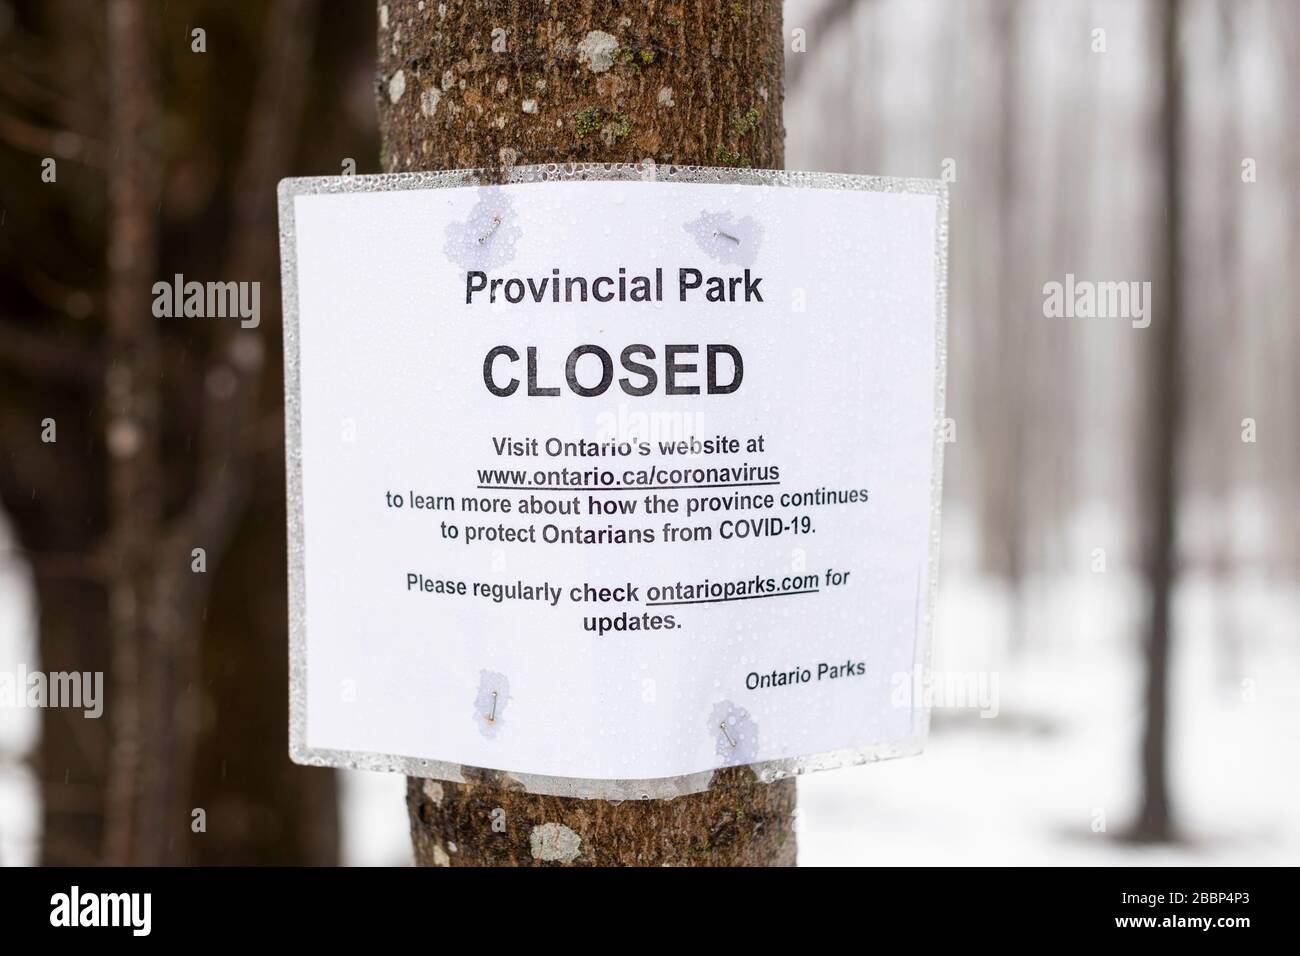 BLUE MOUNTAINS, CANADA - un panneau Parcs Ontario indiquant que le parc provincial de la rivière Pretty est fermé à cause du nouveau coronavirus / COVID-19. Banque D'Images